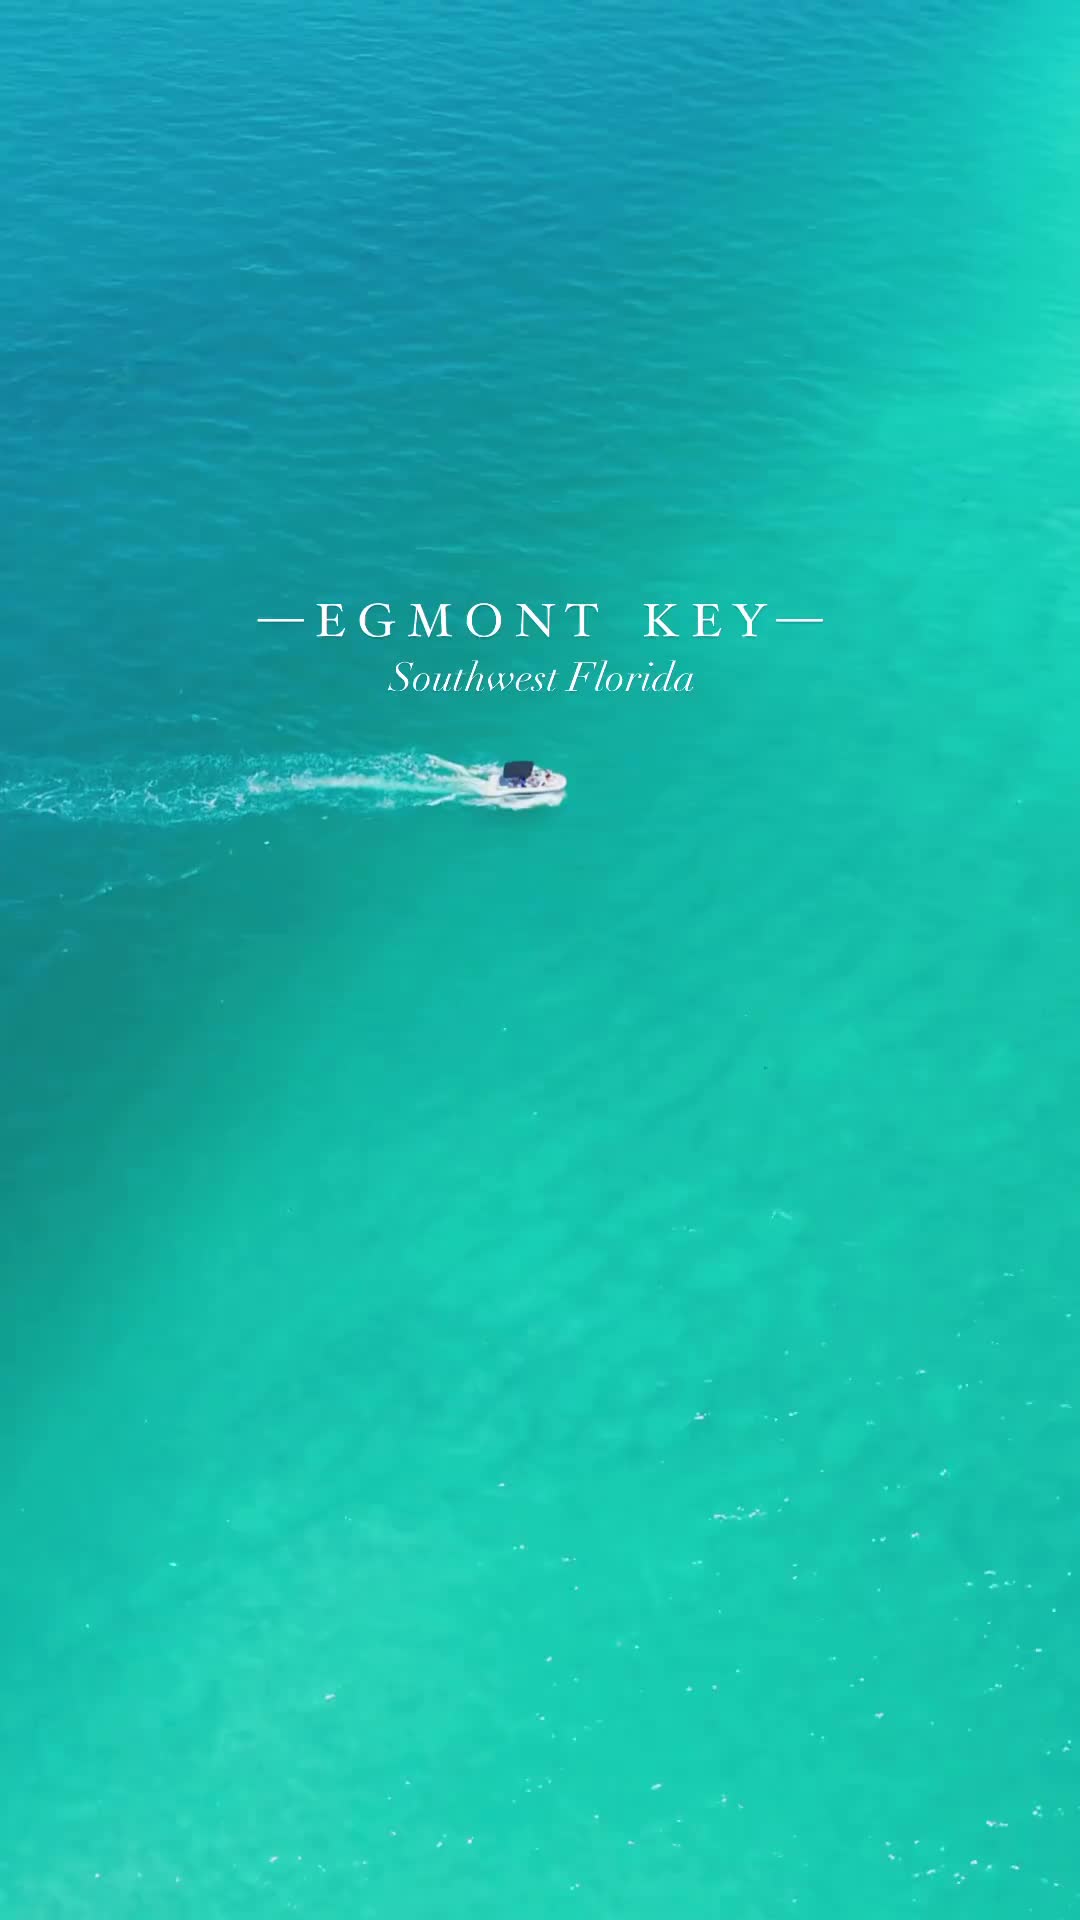 Discover Egmont Key: Florida's Secluded Island Paradise